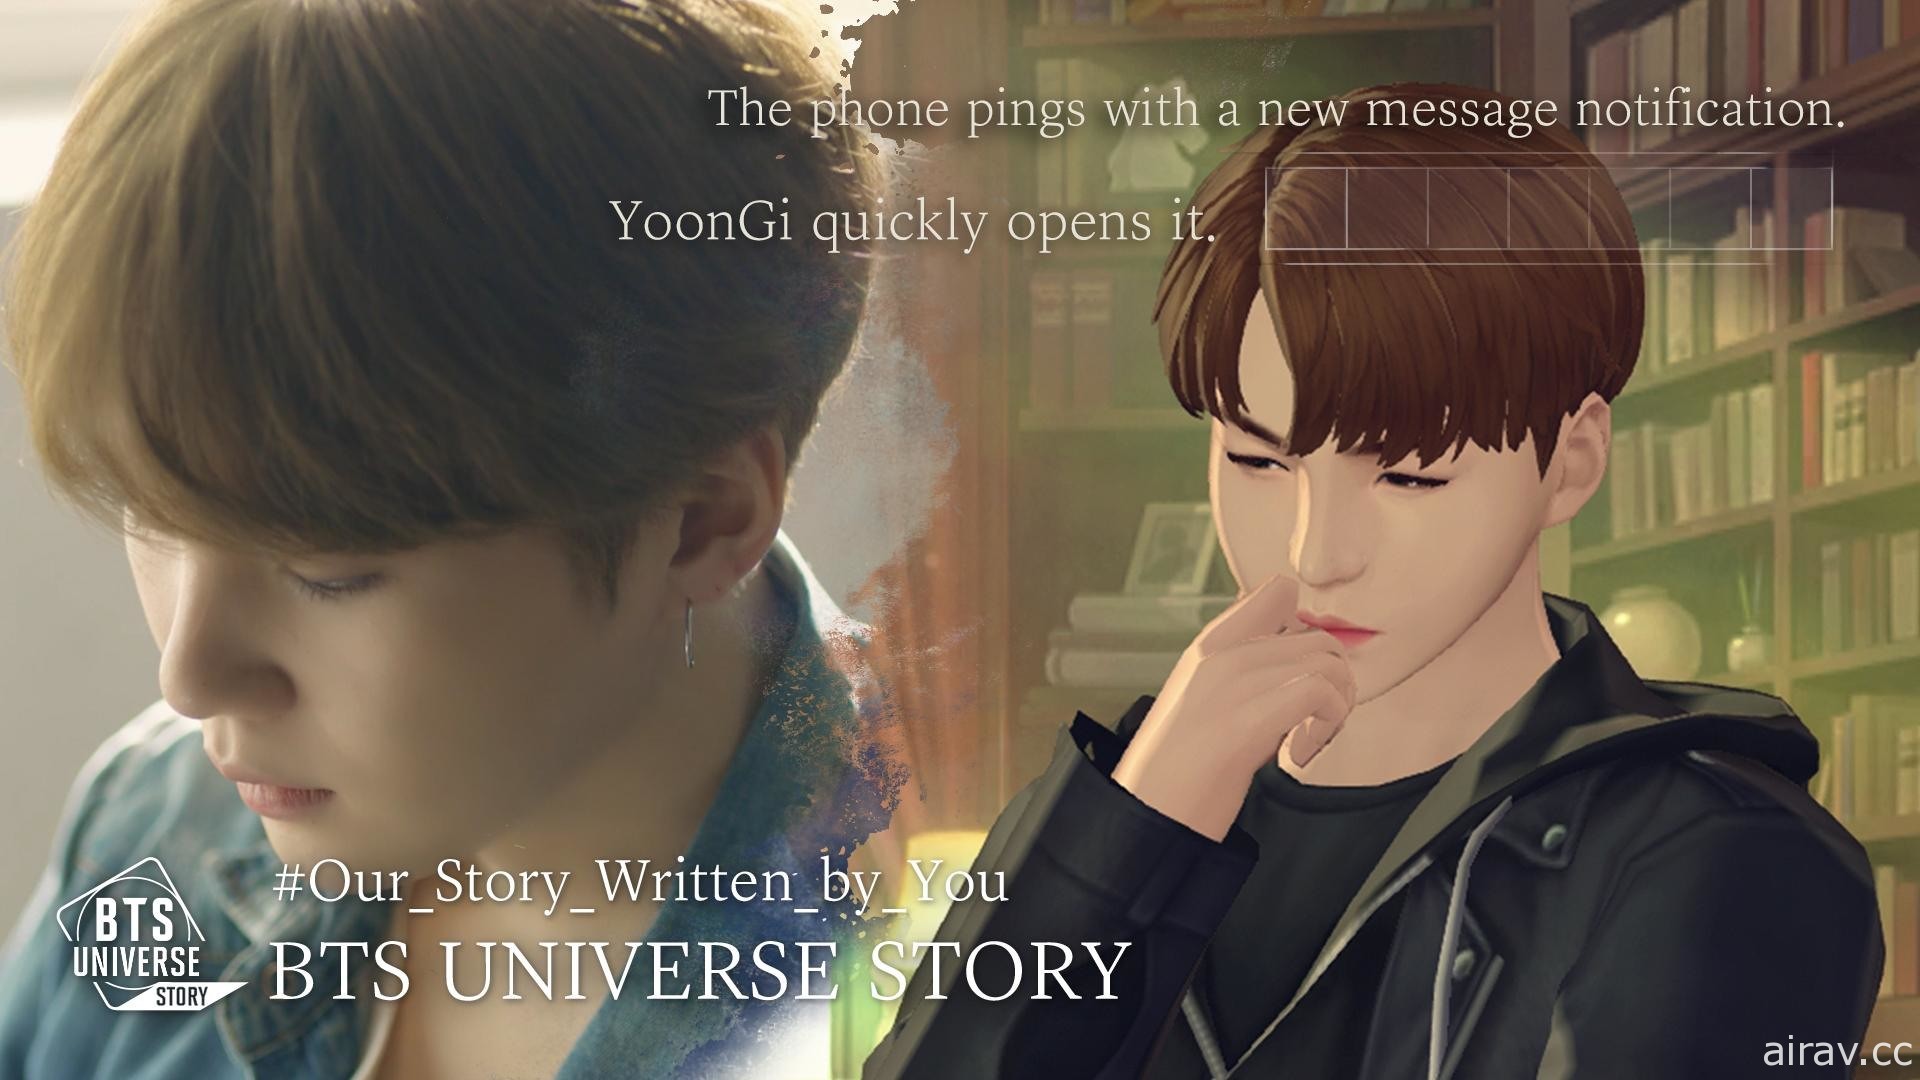 【試玩】ARMY 們注意！《BTS Universe Story》互動之餘創作獨一無二的 BTS 故事